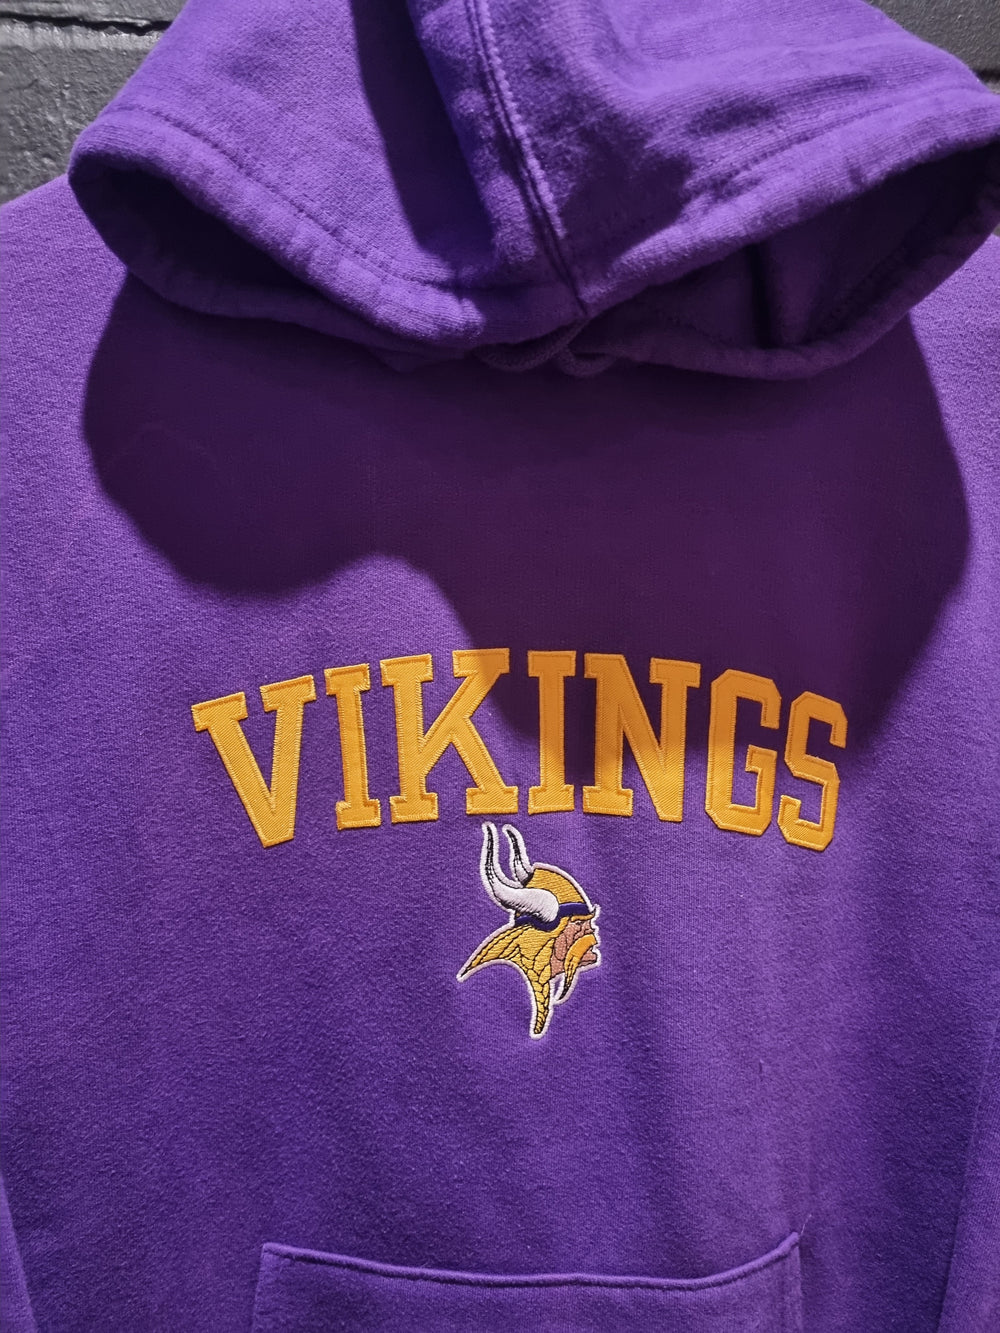 Minnesota Vikings NFL Apparal Medium